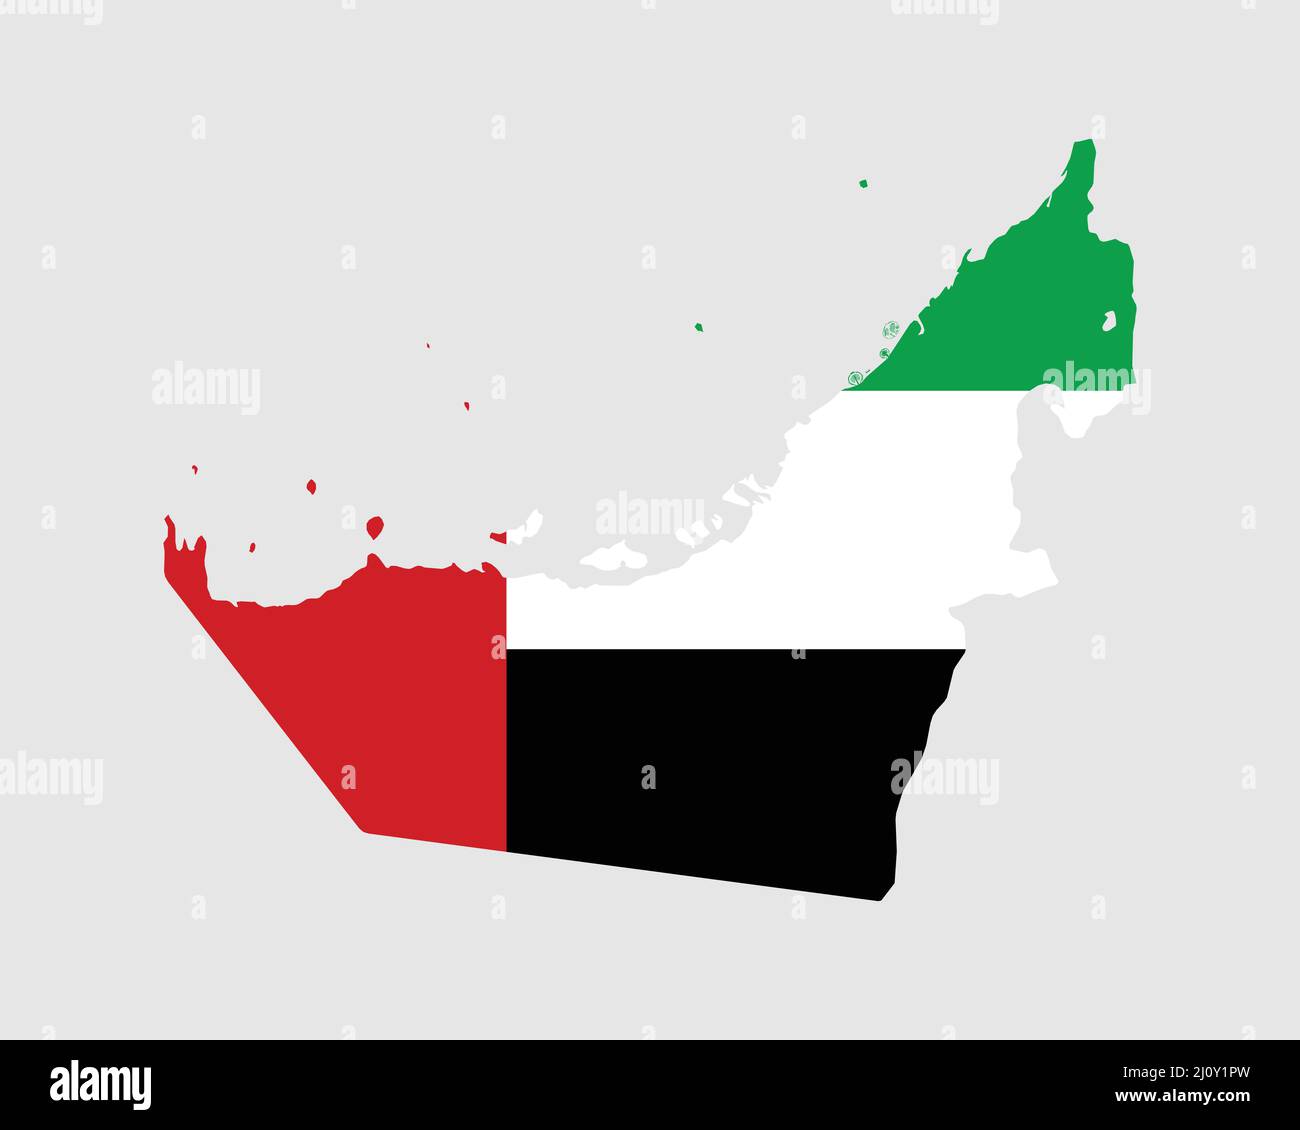 Vereinigte Arabische Emirate Flagge Karte. Karte der Vereinigten Arabischen Emirate mit dem Emirati-Länderbanner. Vektorgrafik. Stock Vektor